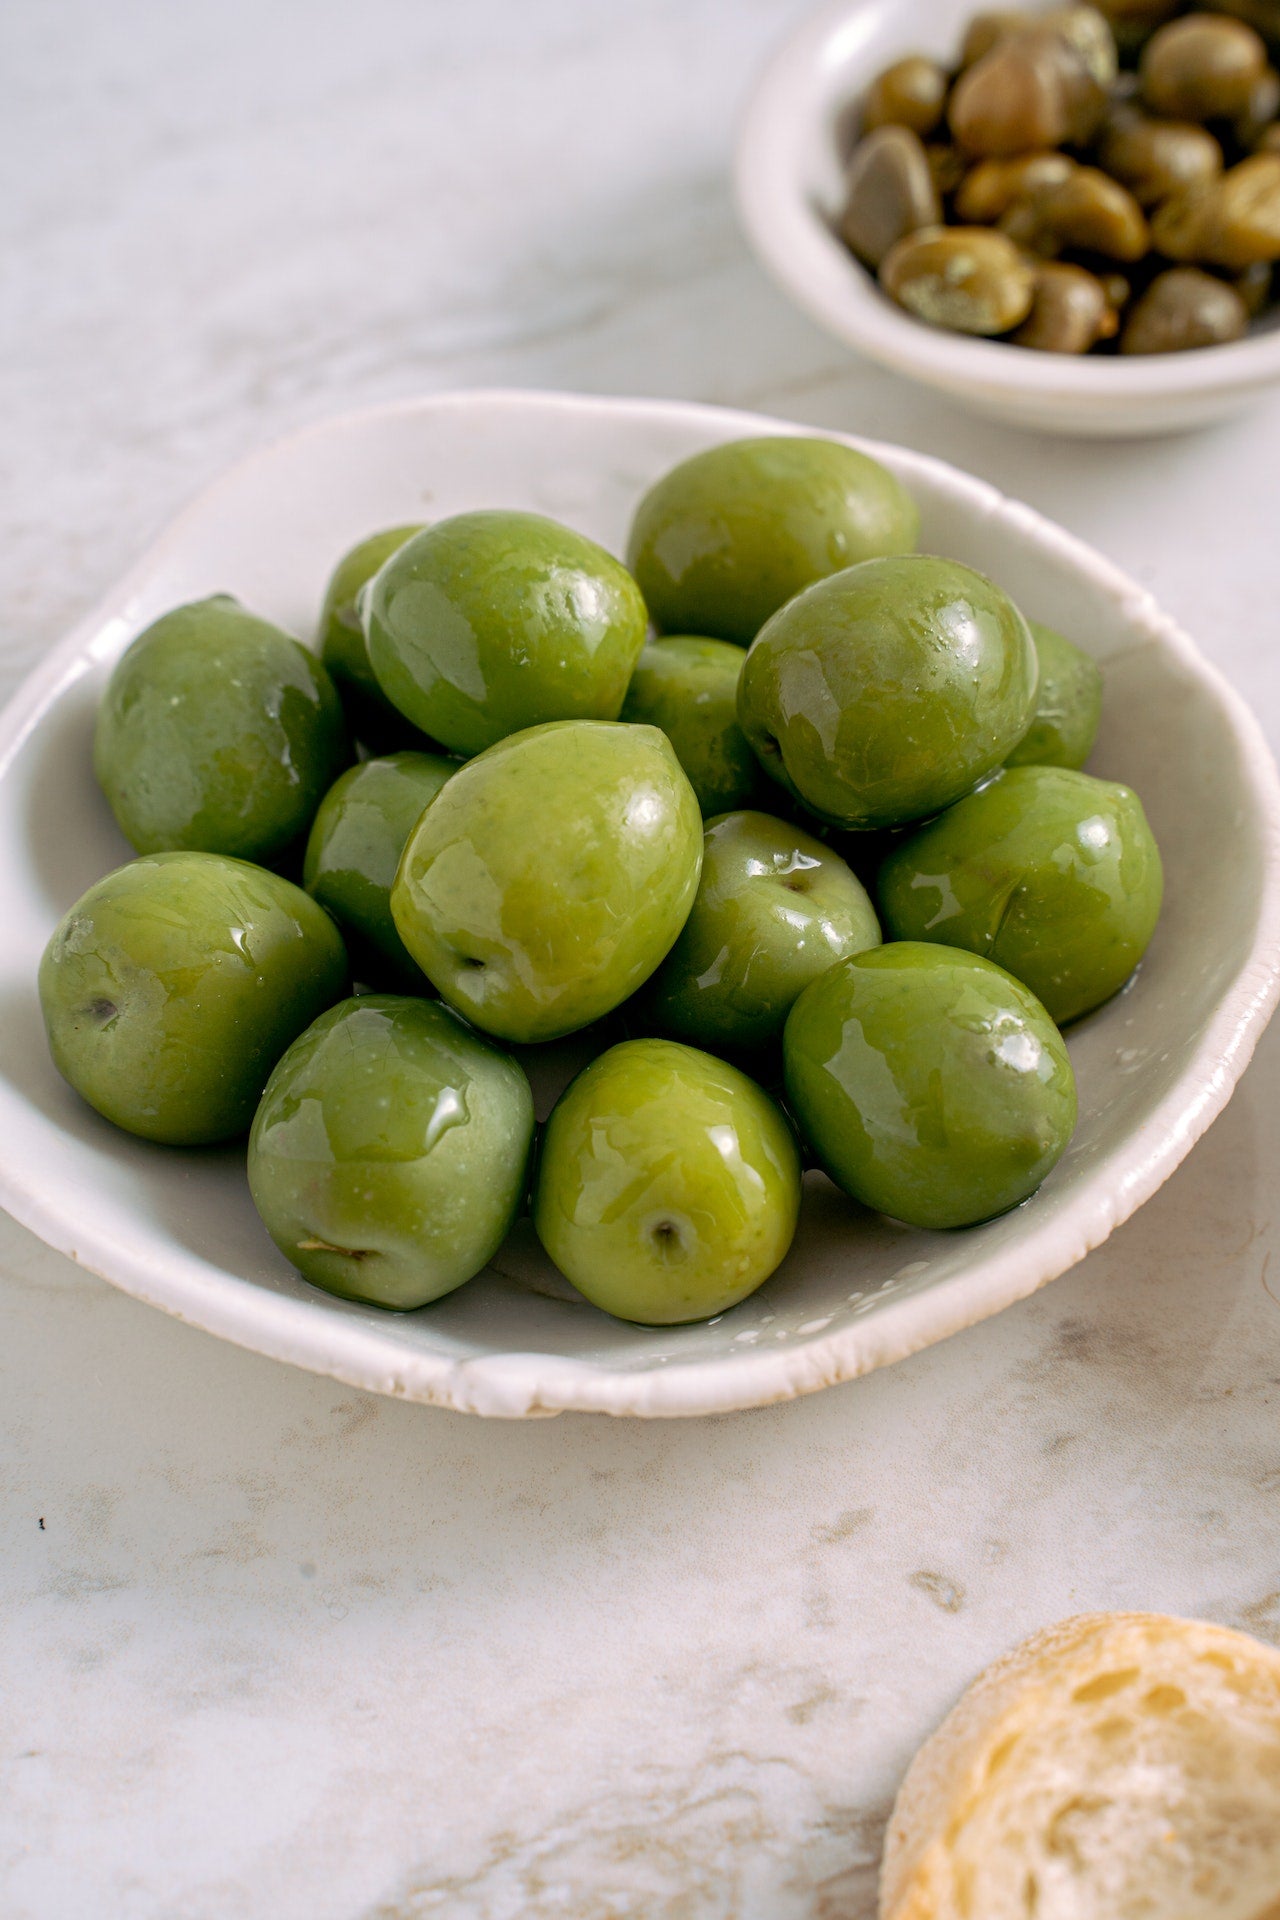 Olives vertes variété Lucques du Languedoc au naturel, bocal pasteurisé 160 g